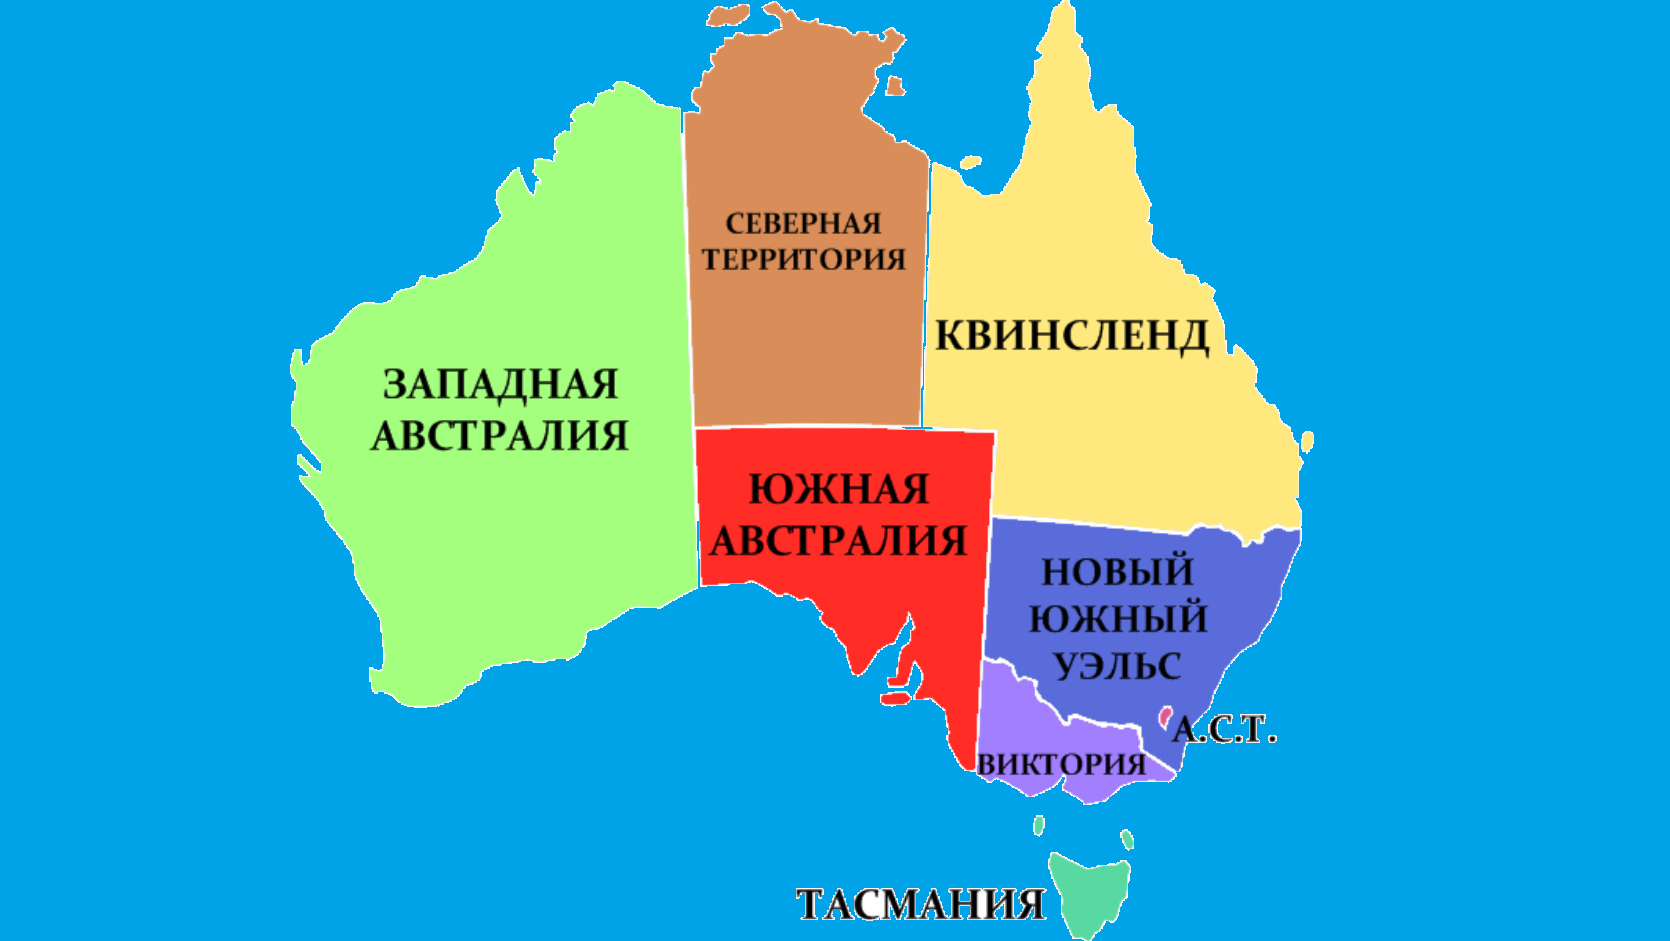 Австралия новый южный уэльс национальная. Материк Австралия политическая карта. Штаты Австралии на карте. Политическая карта Австралии.